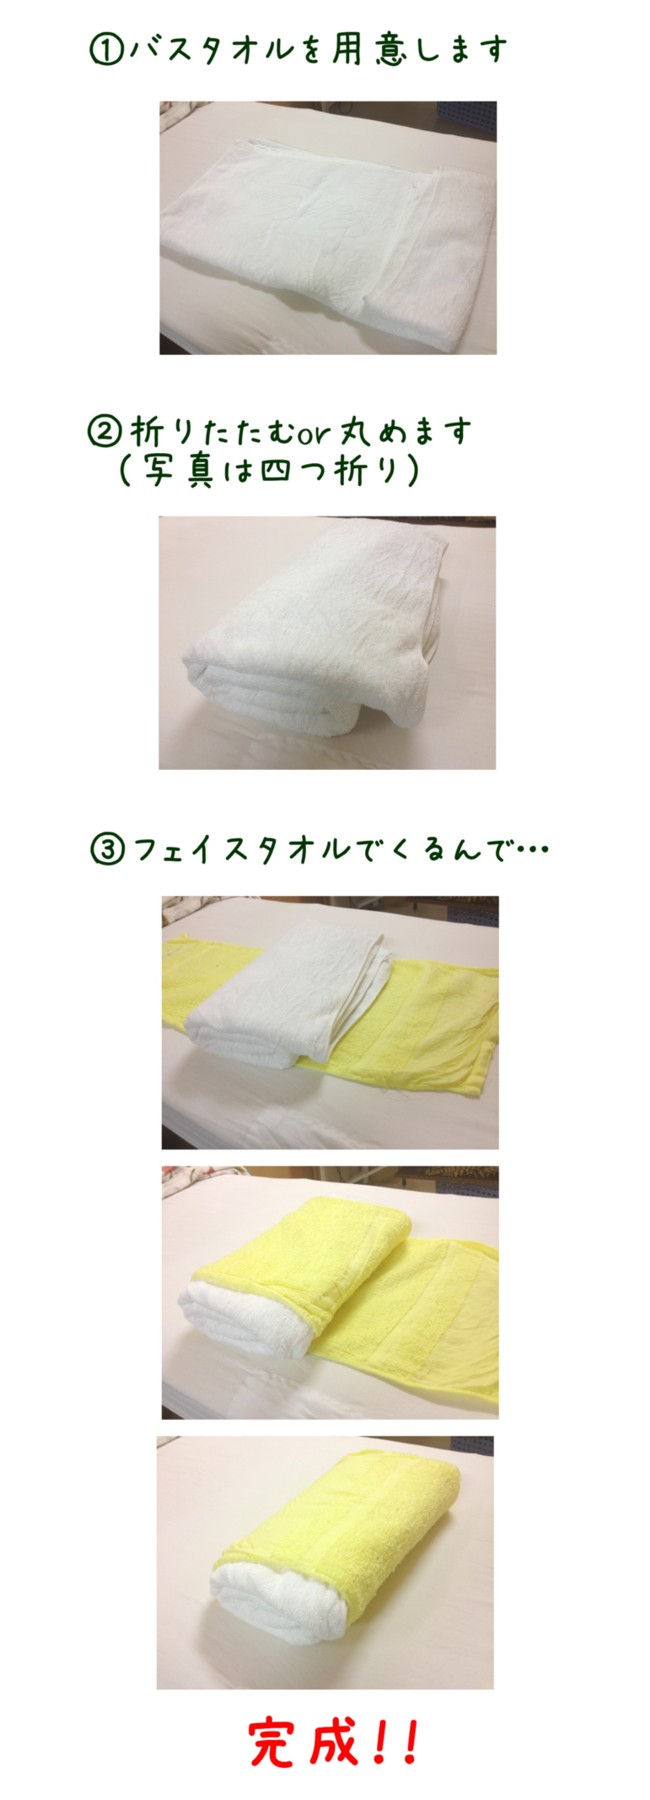 枕の作り方